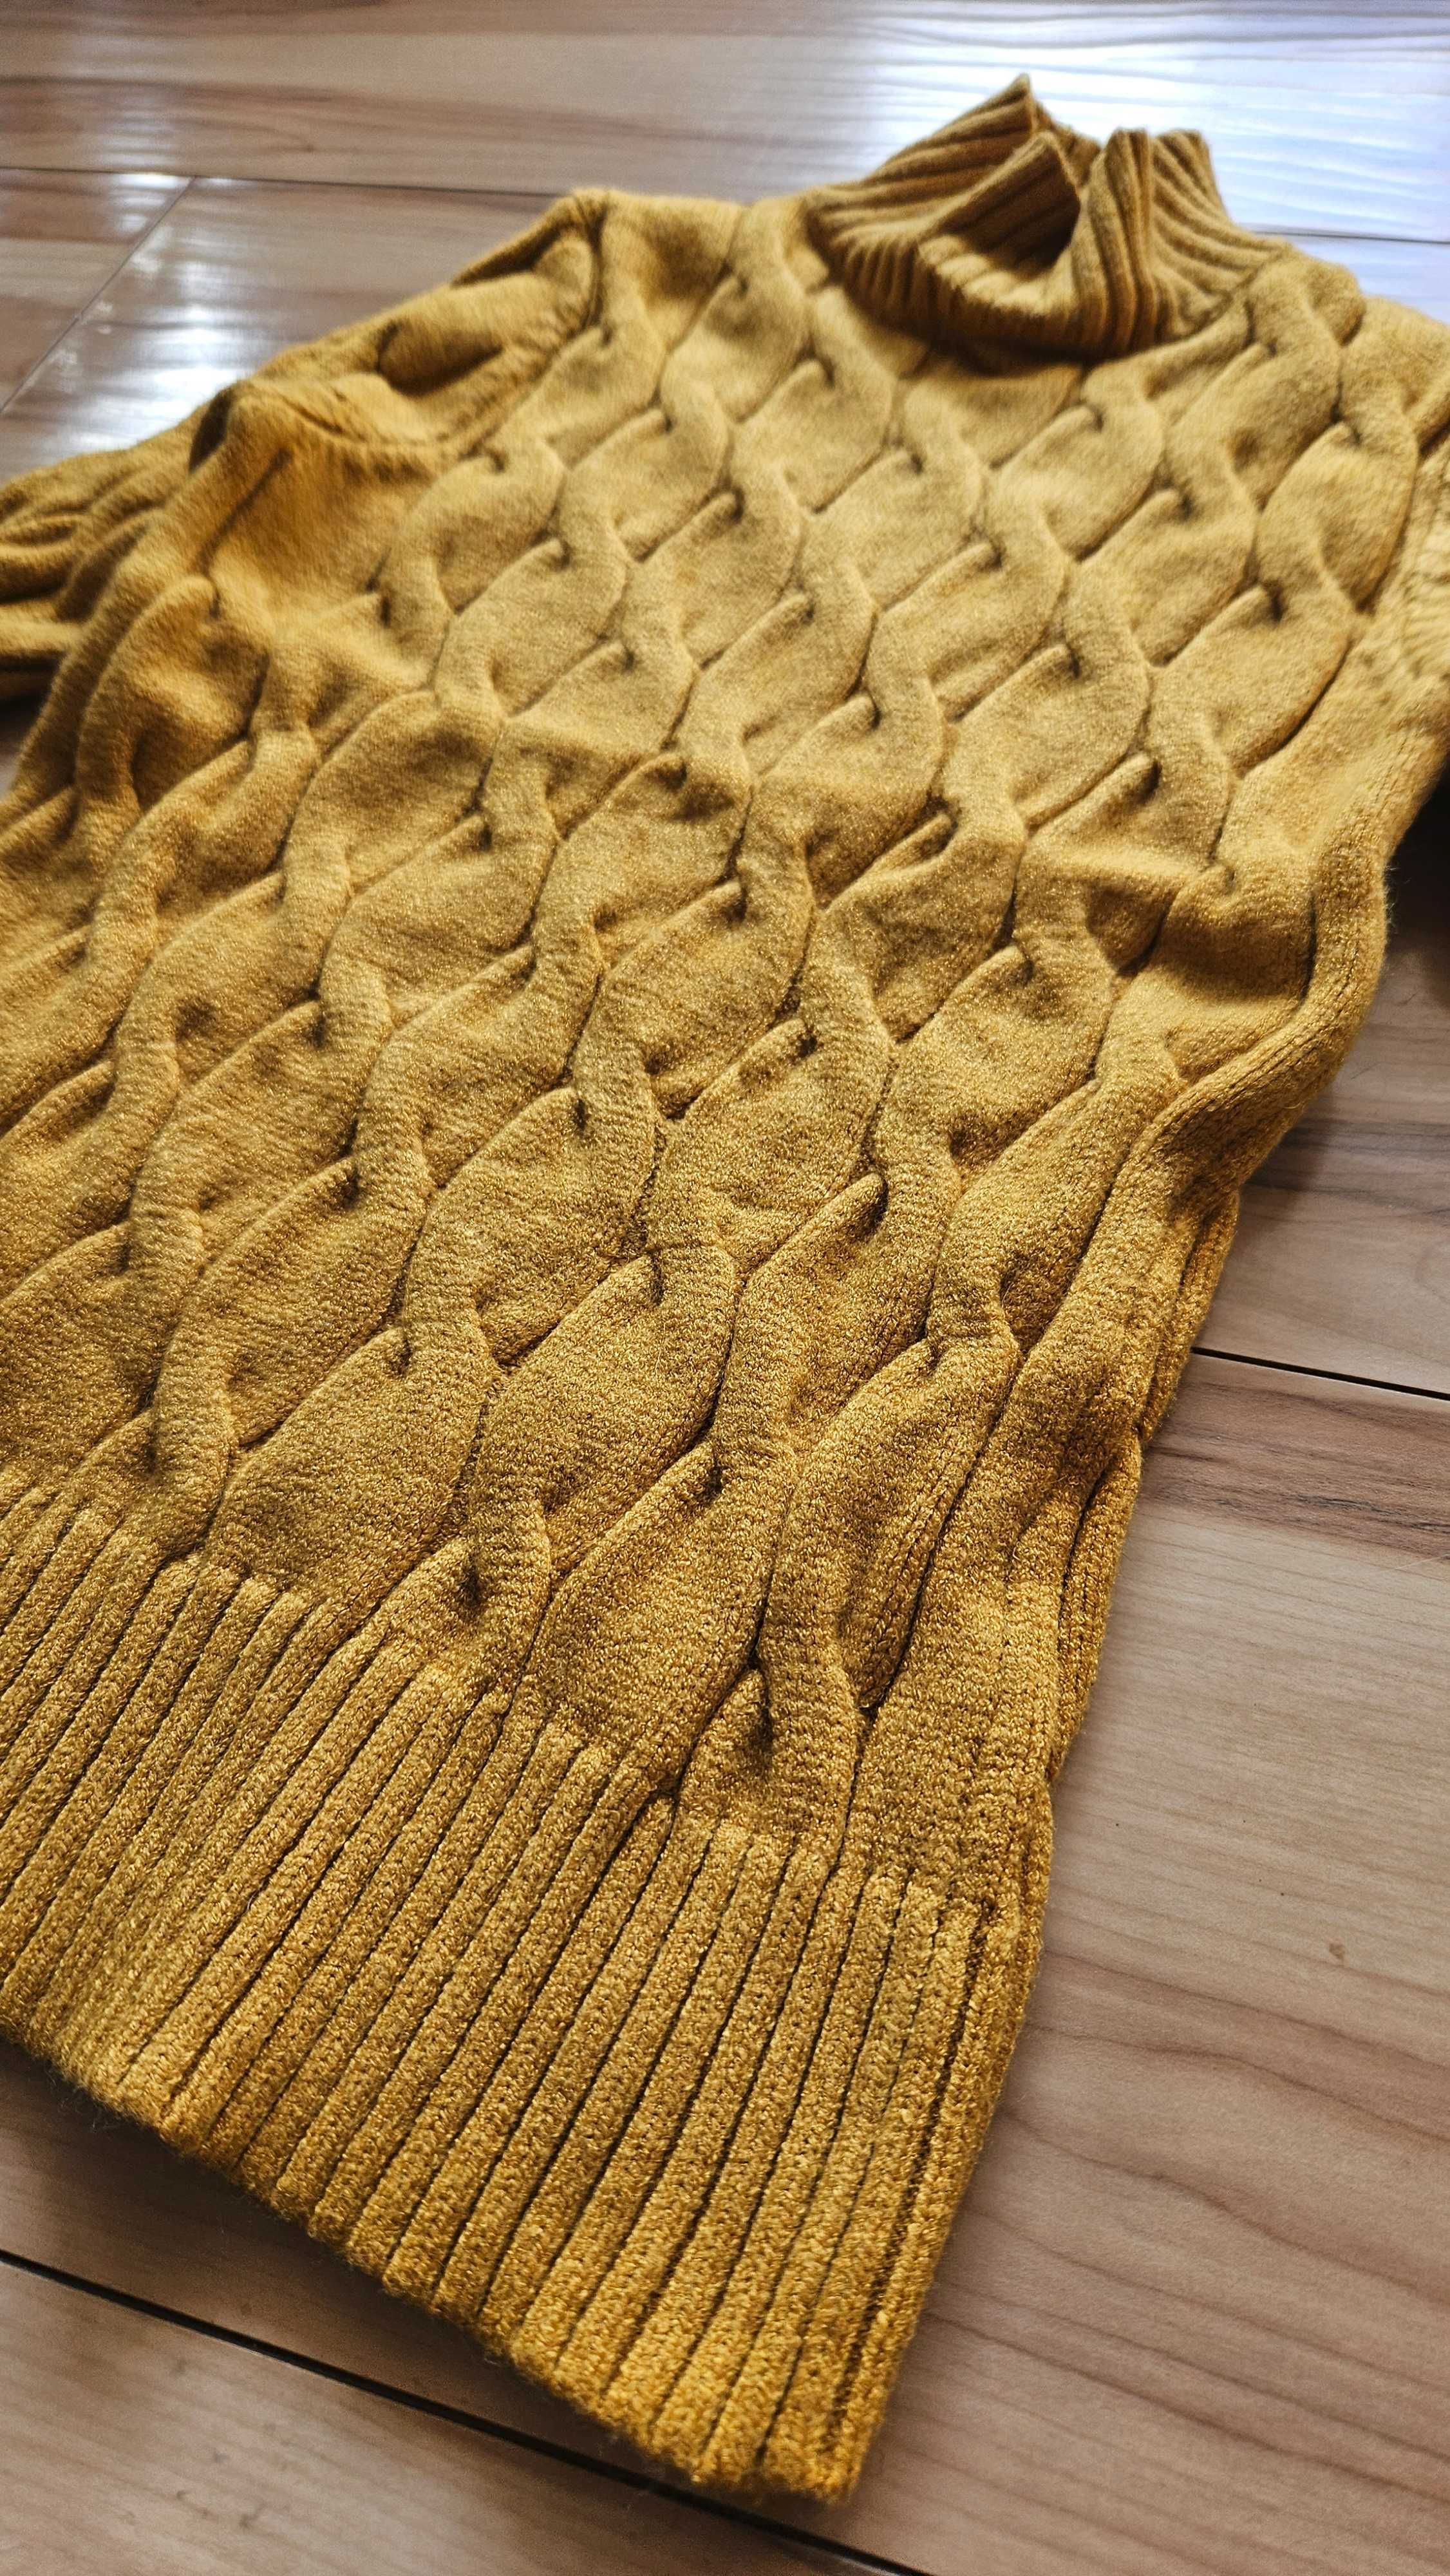 Gruby sweter damski półgolf złota nić romby warkocz May S 36